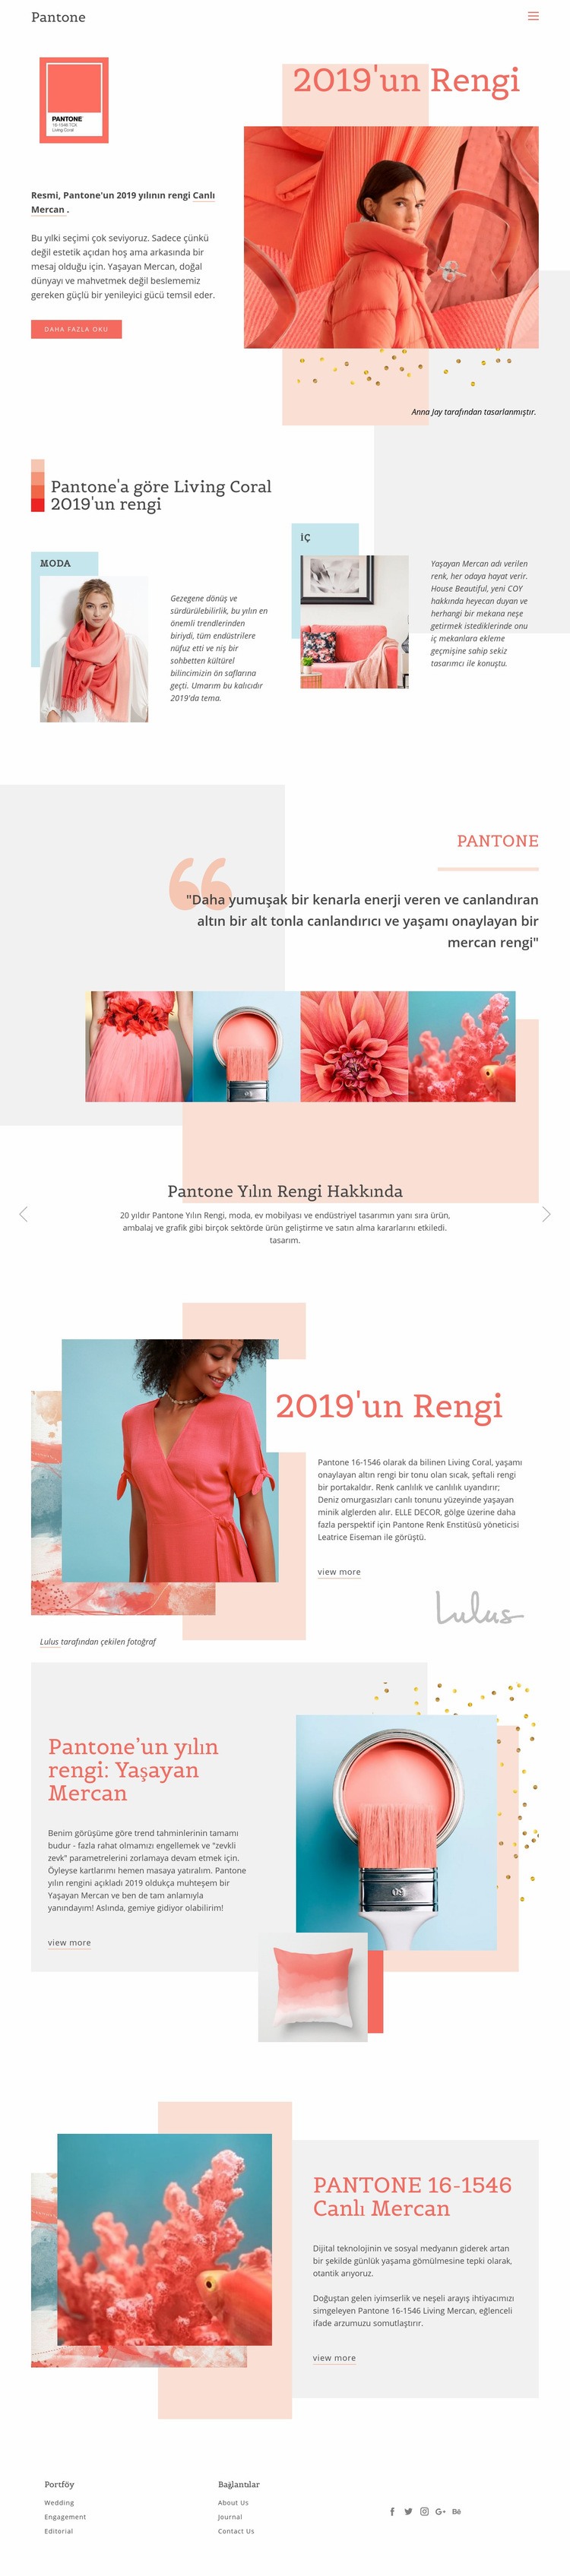 2019'un rengi Web sitesi tasarımı